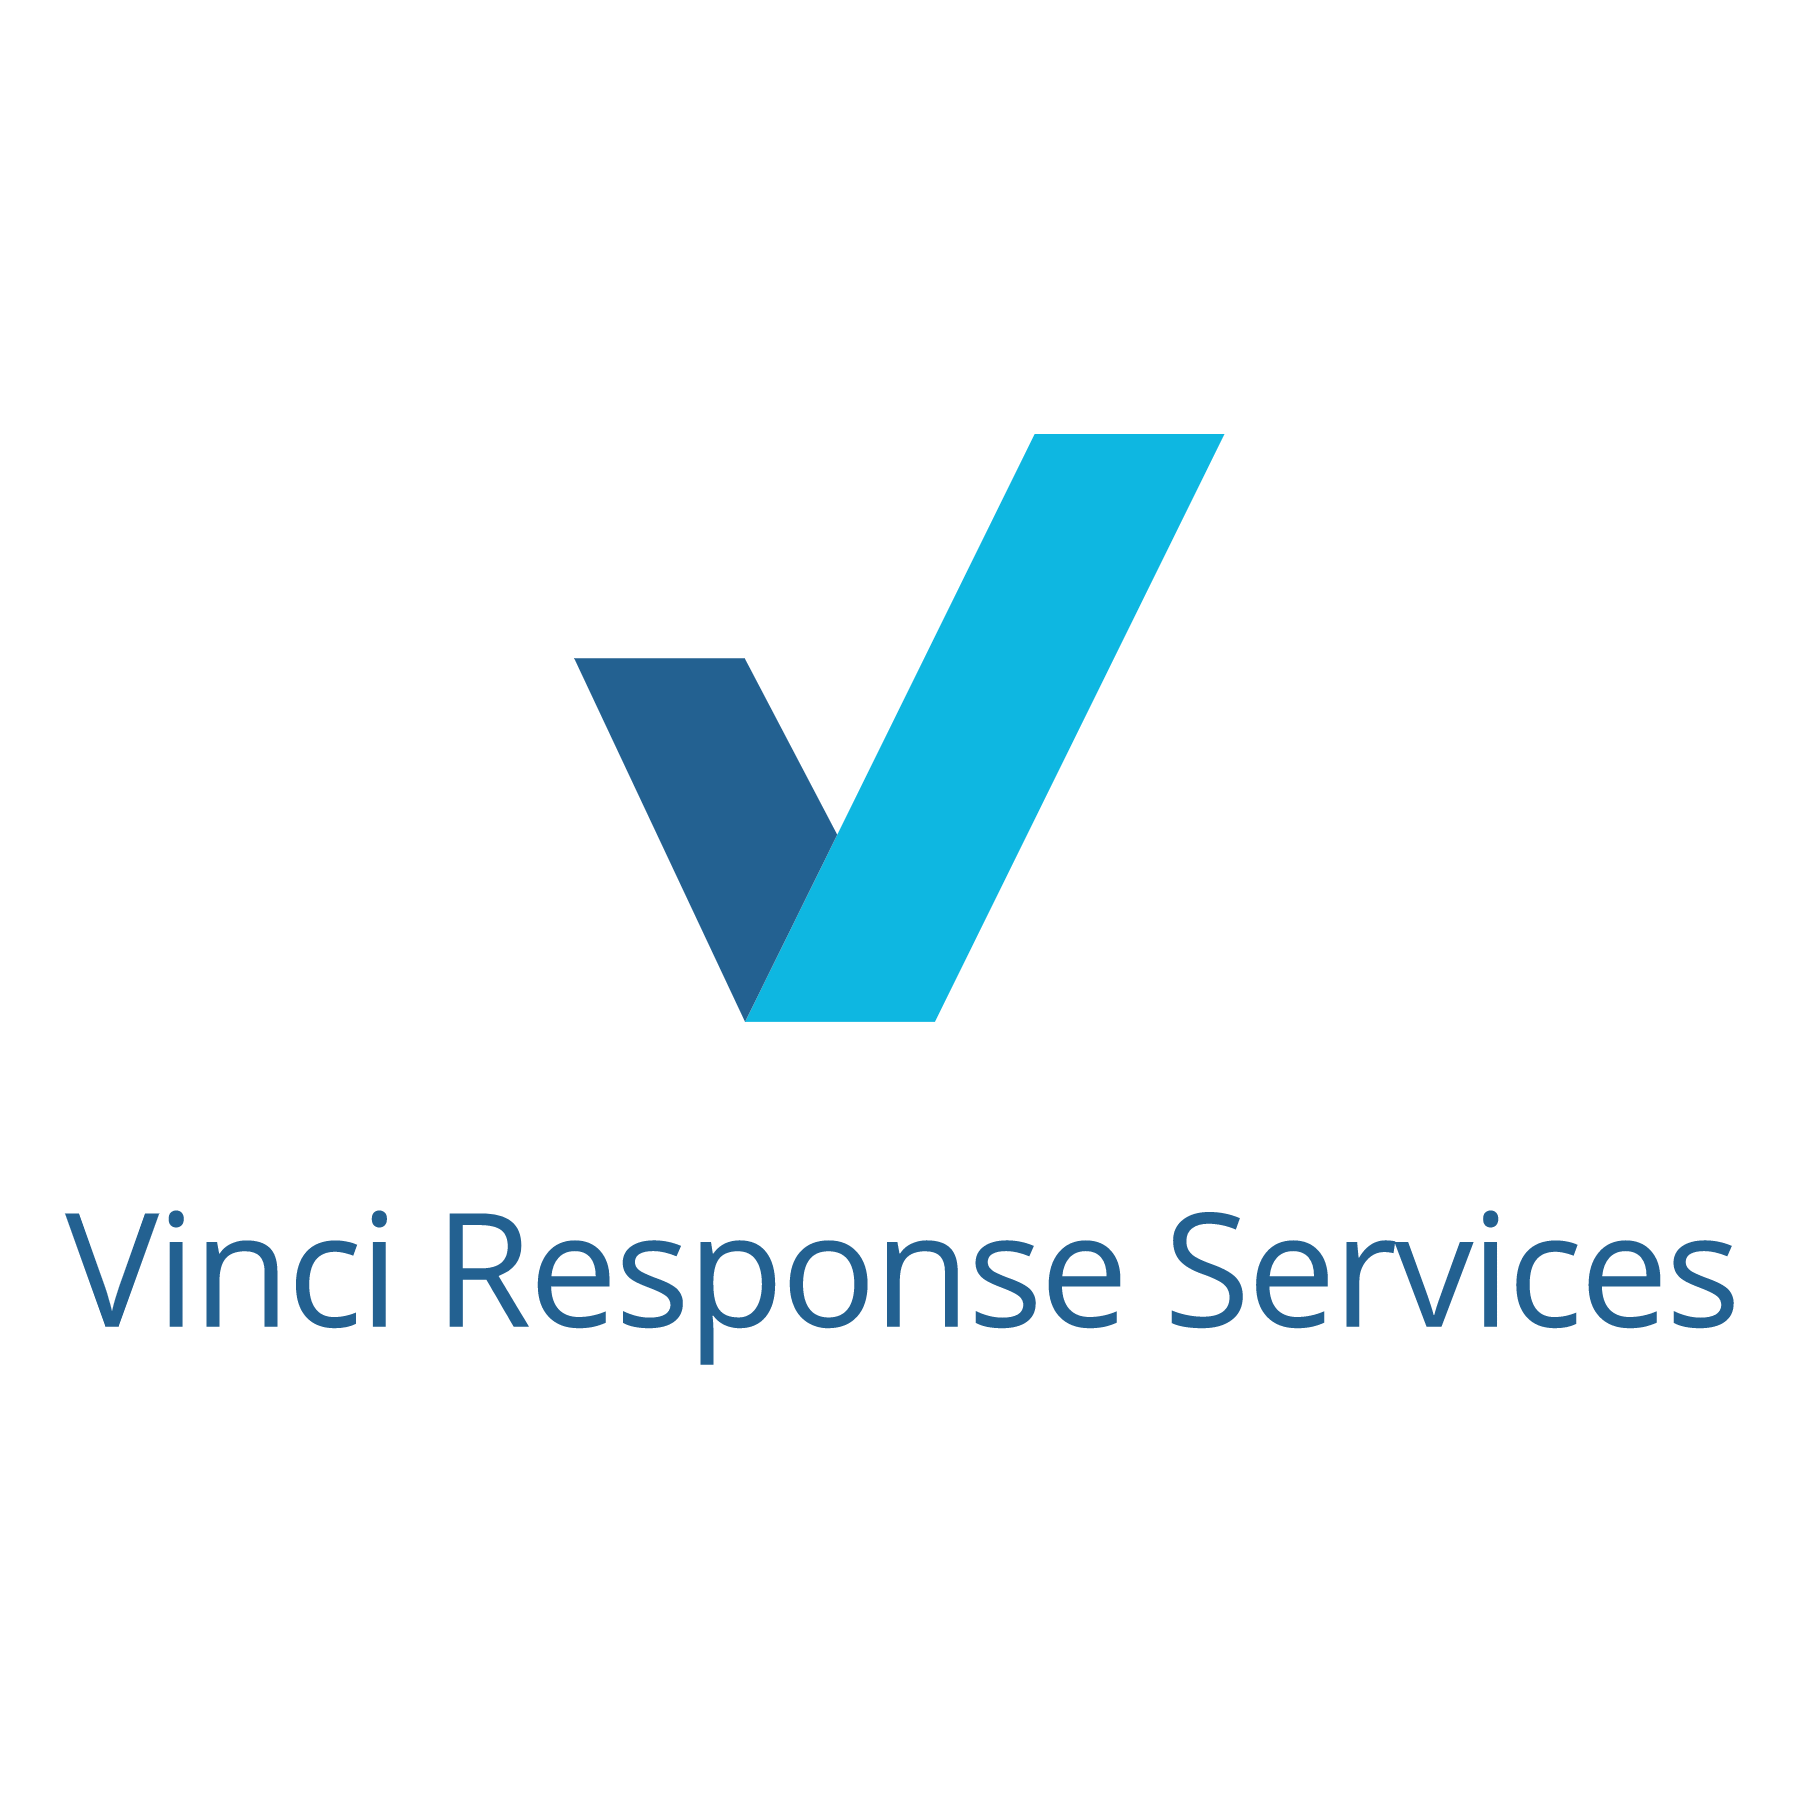 Vinci Response